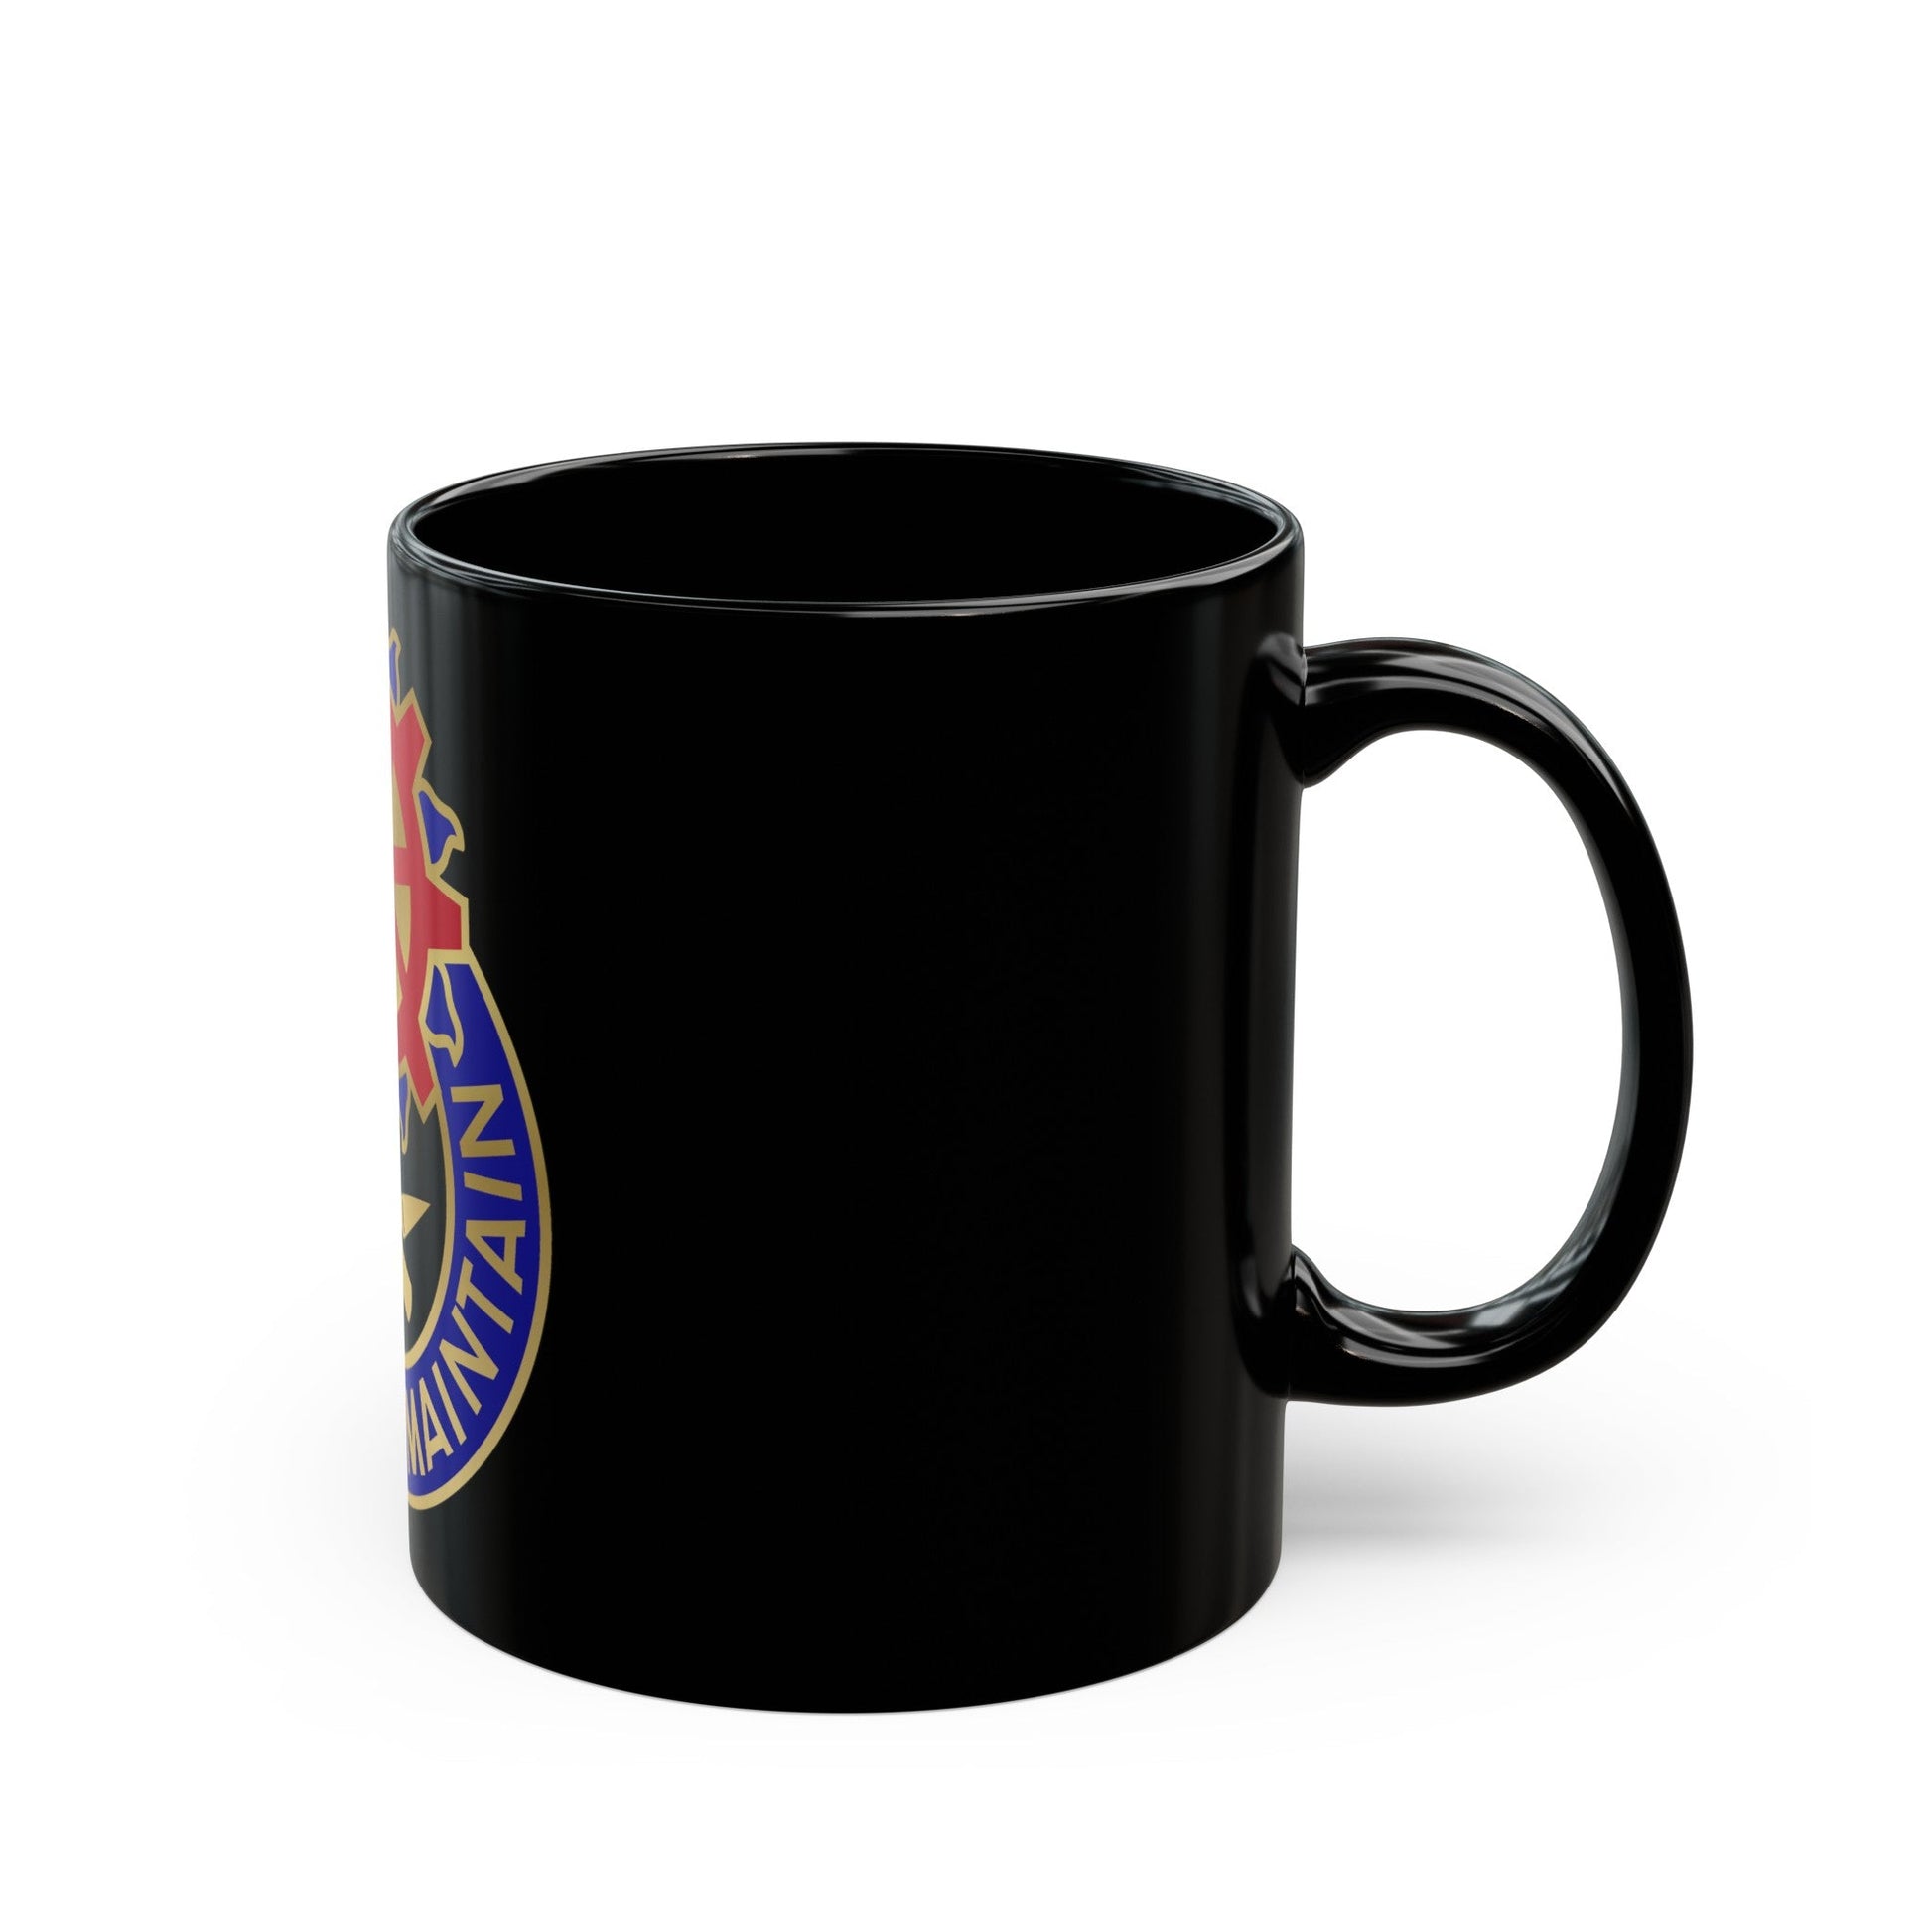 187 Ordnance Battalion (U.S. Army) Black Coffee Mug-The Sticker Space